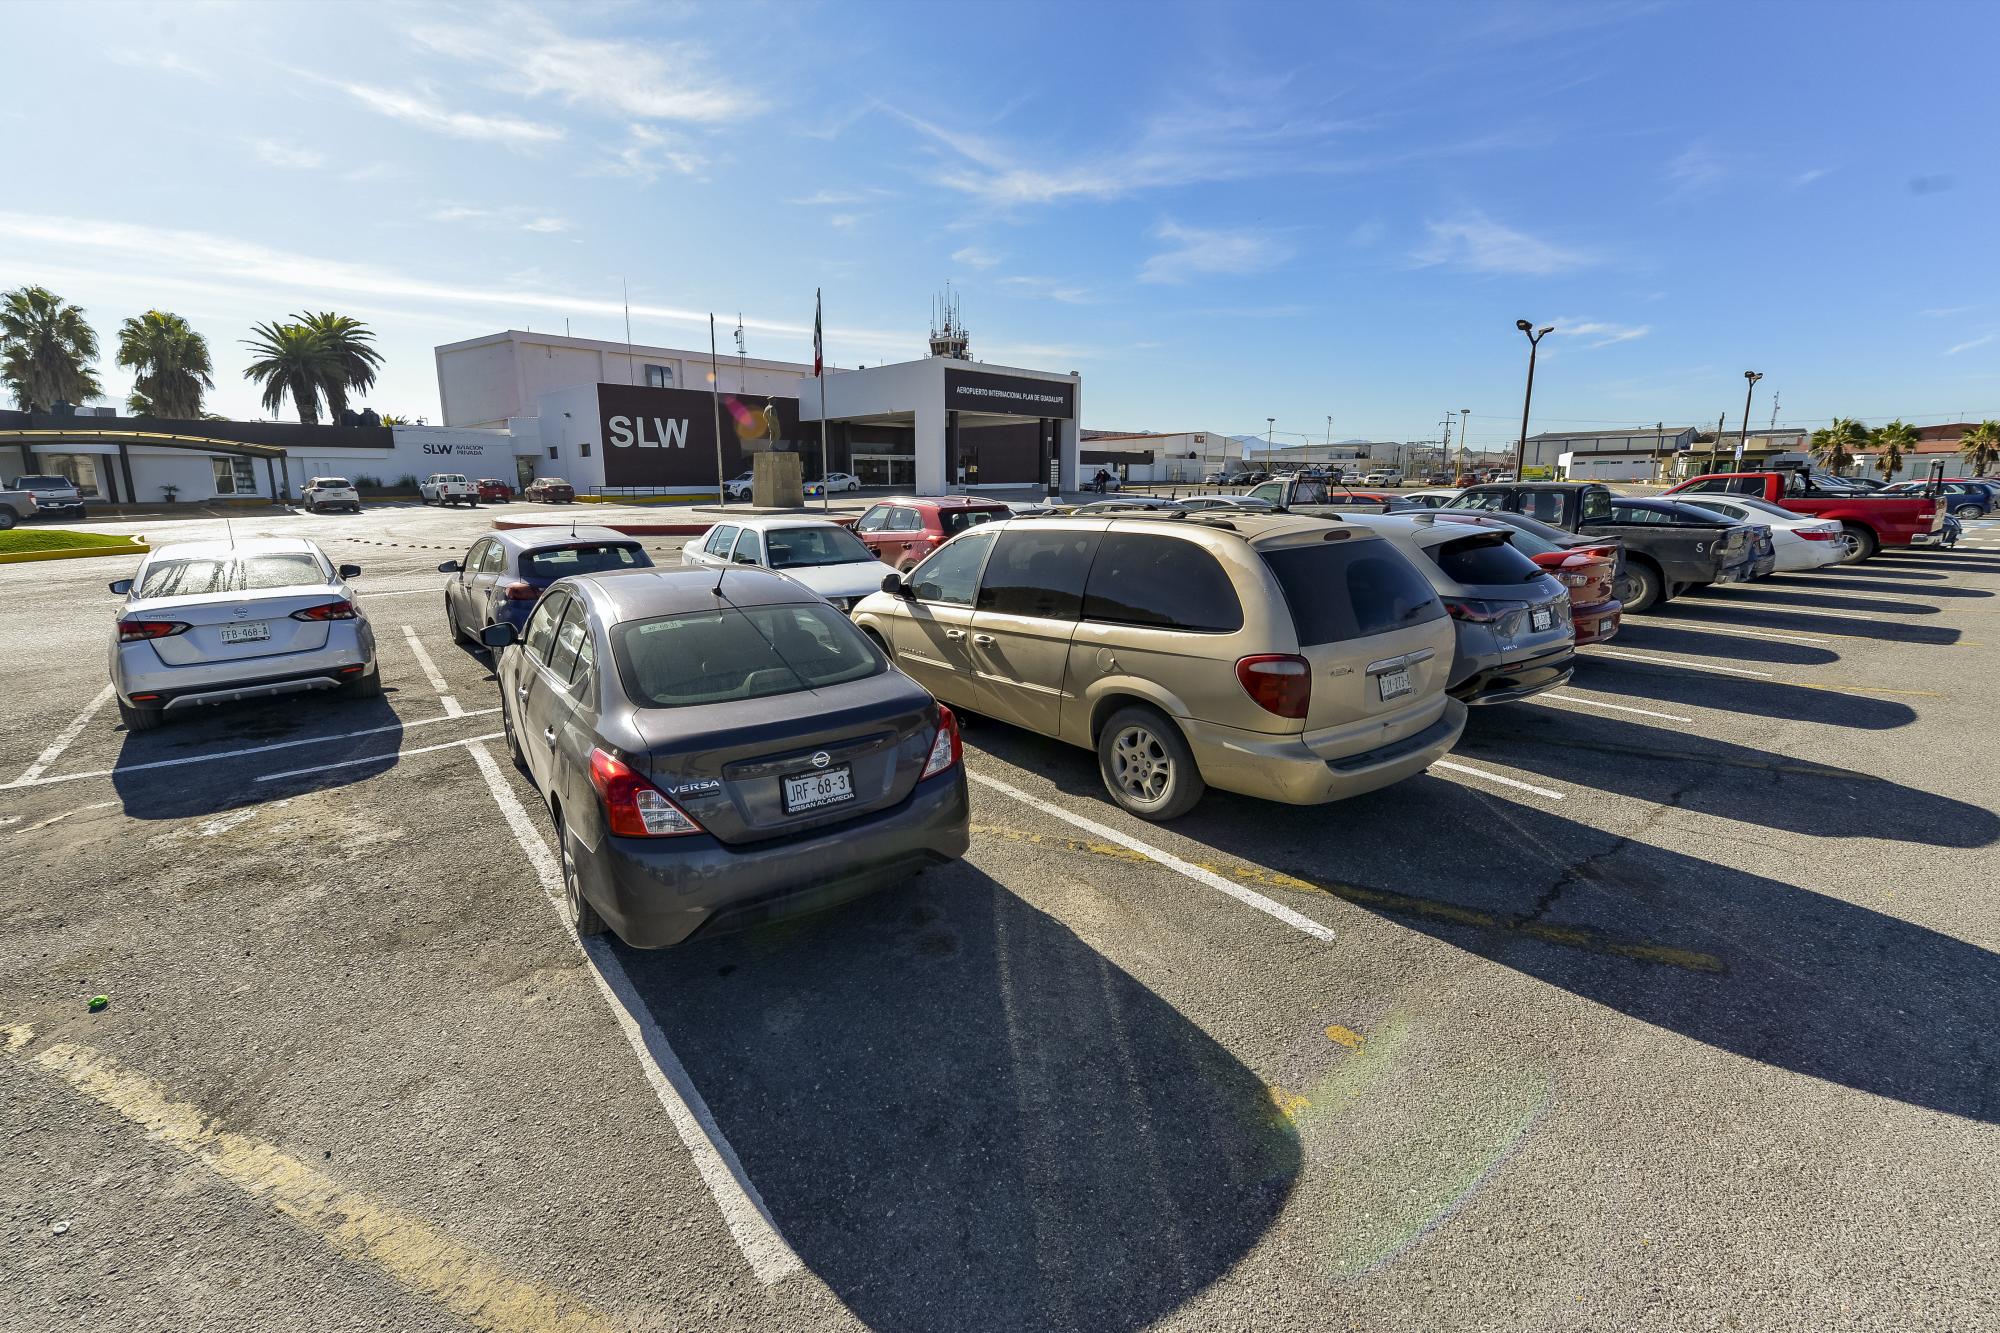 $!A partir de marzo, los empleados deberán utilizar otra área para estacionar sus vehículos.